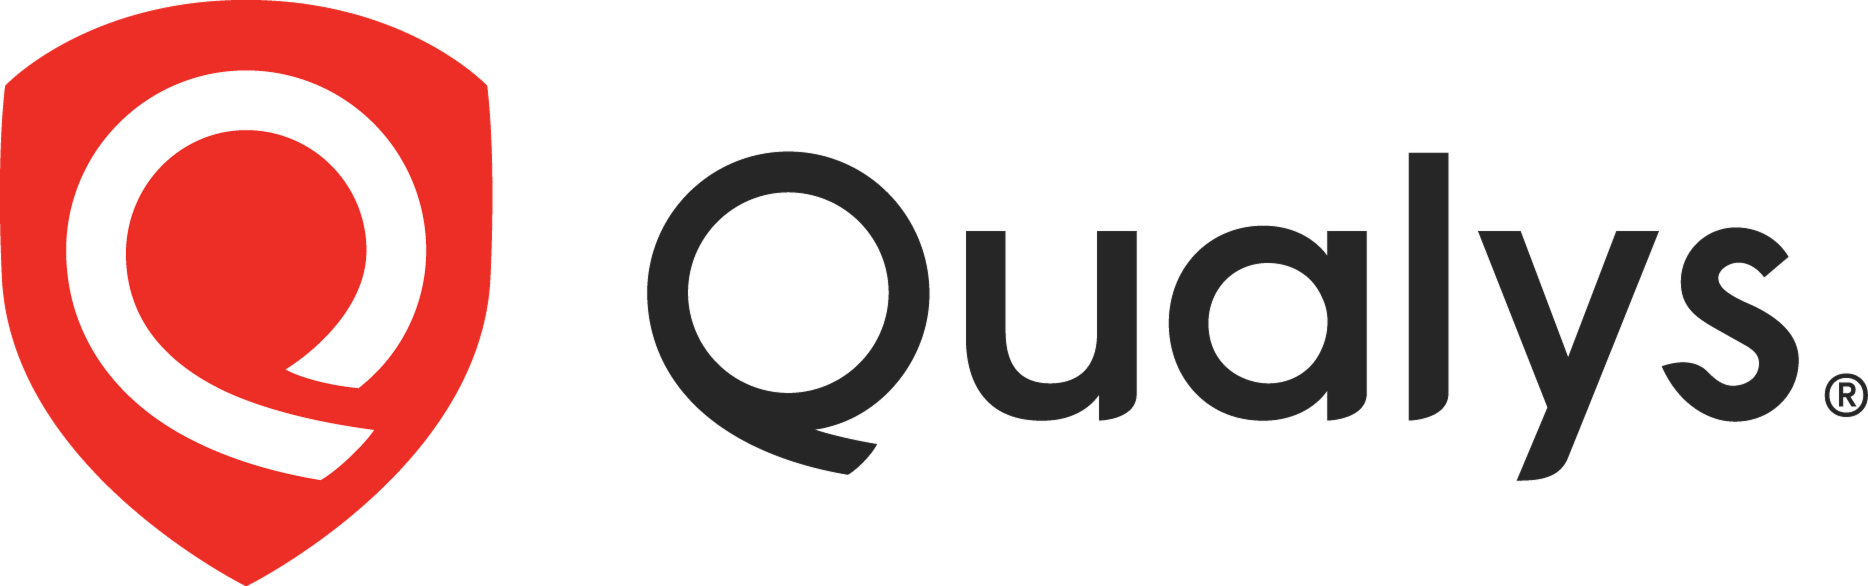 Qualys, Inc